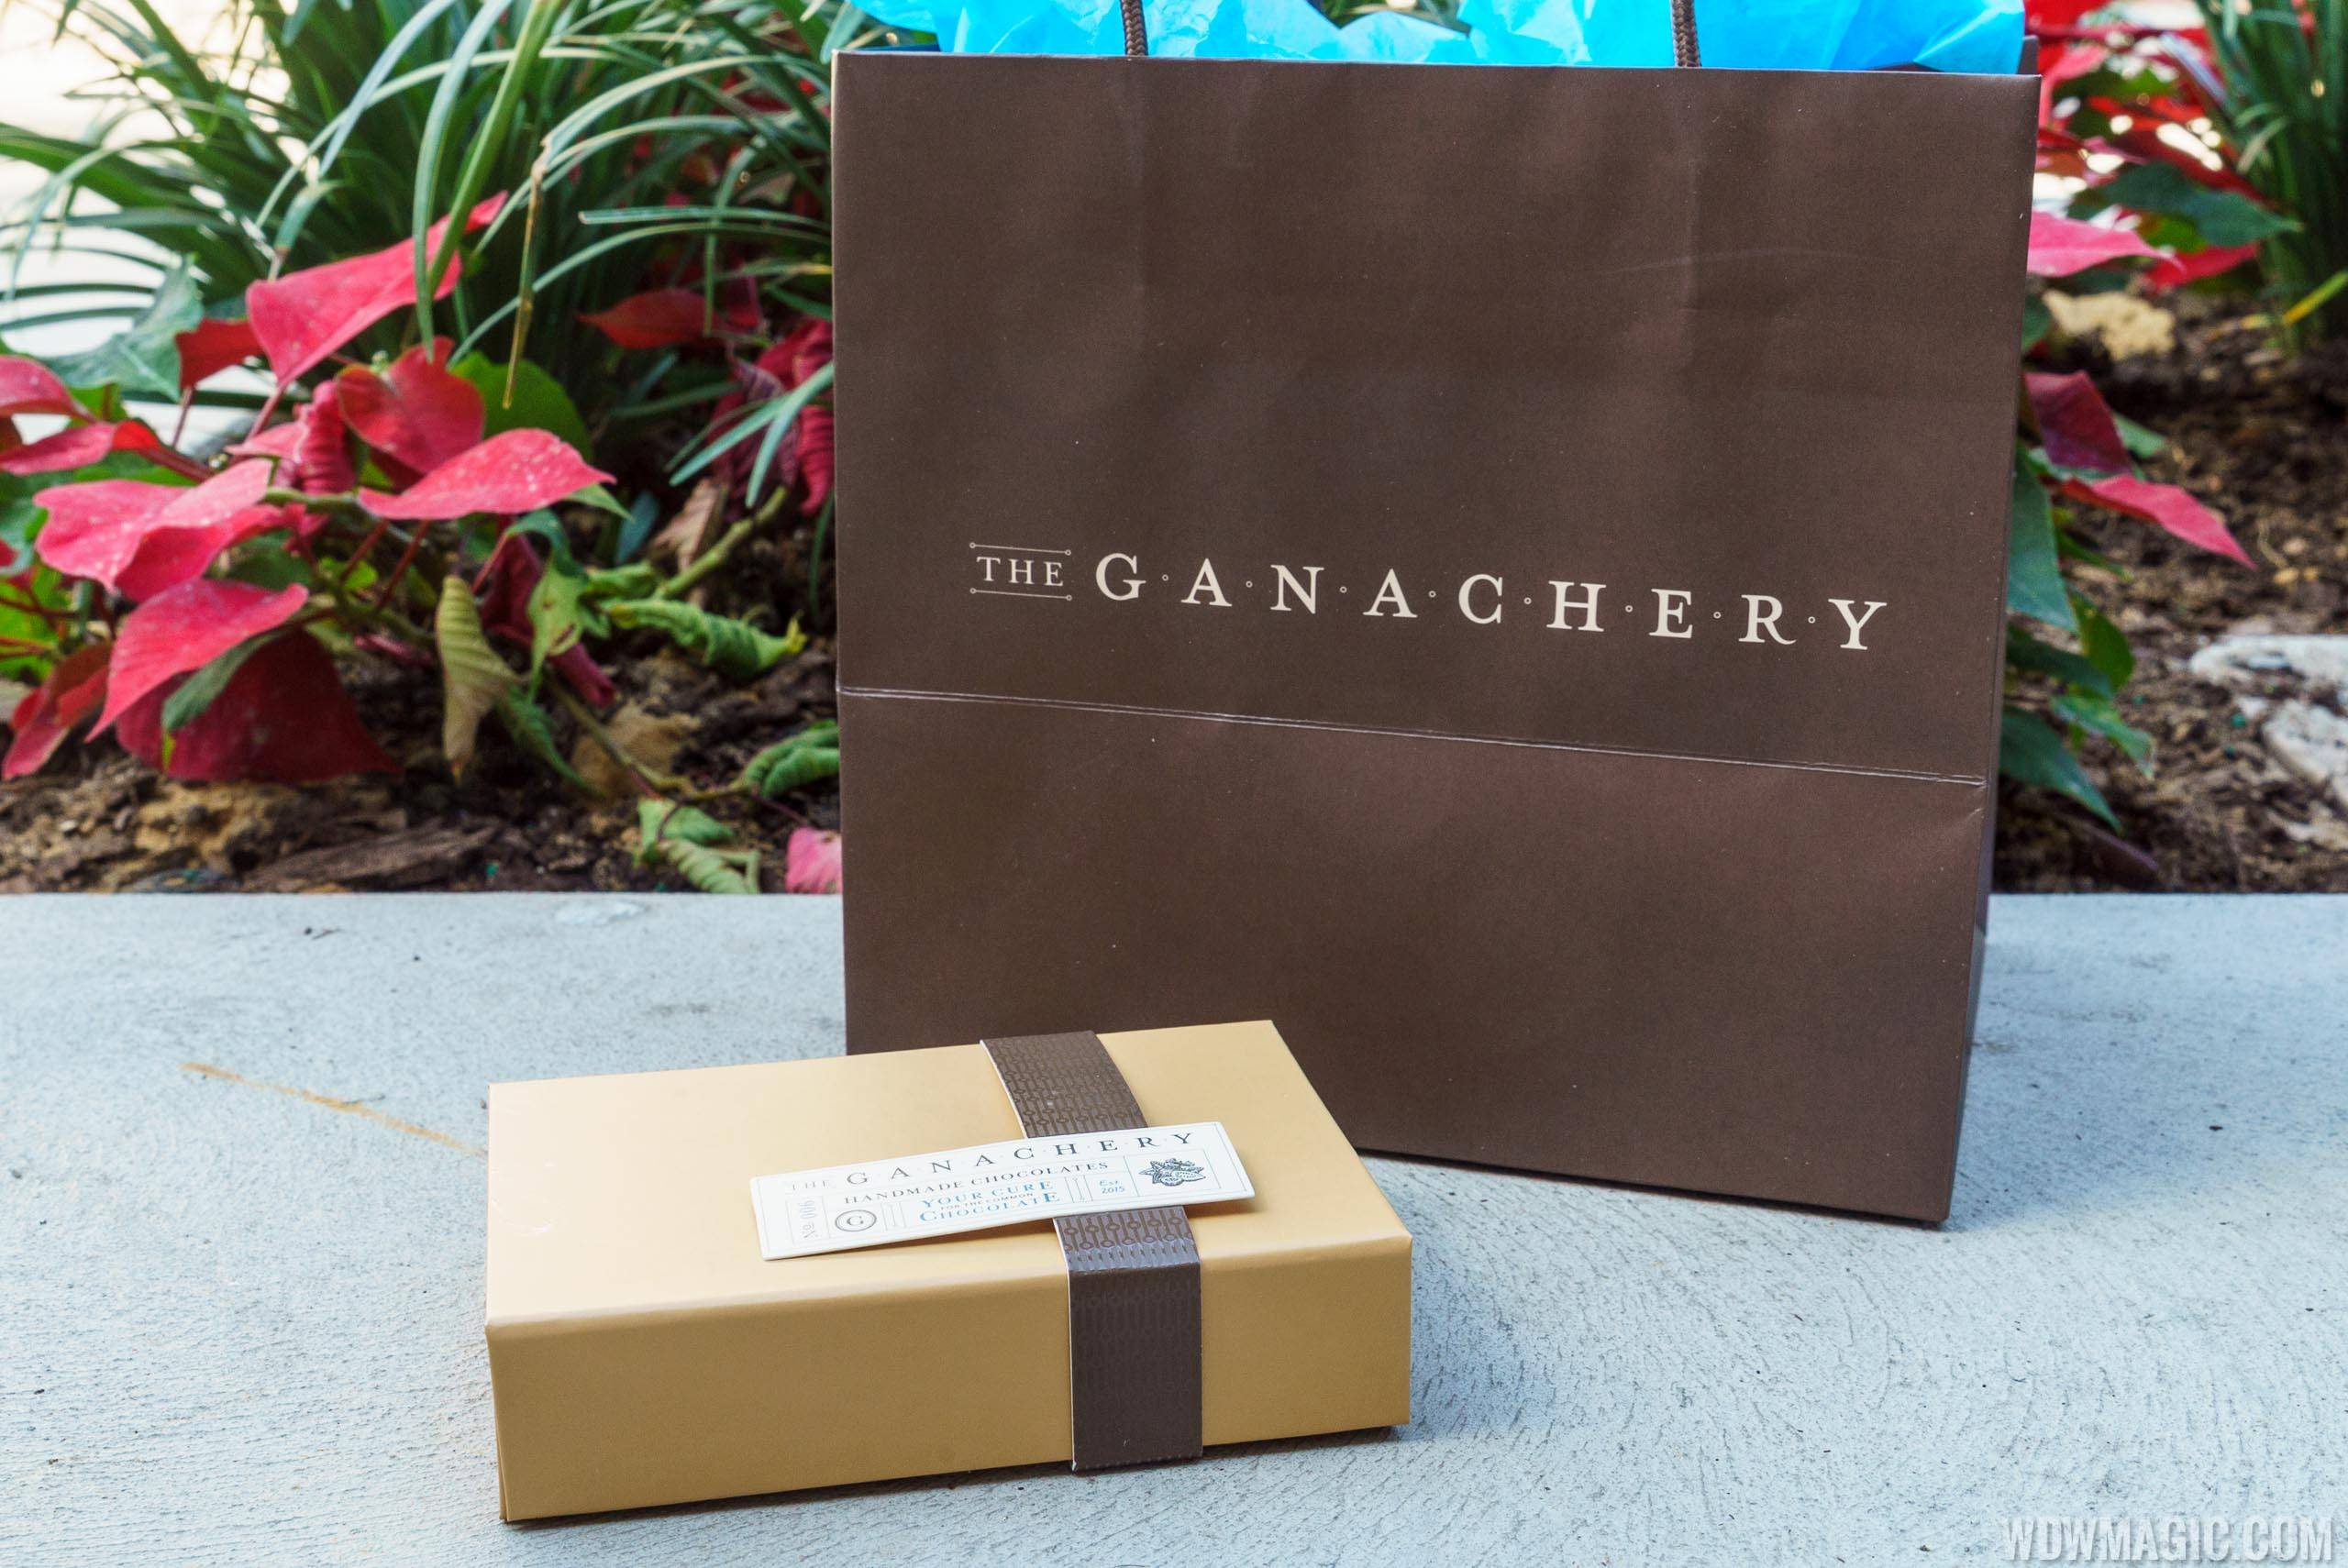 The Ganachery - Ganache assortment gift box